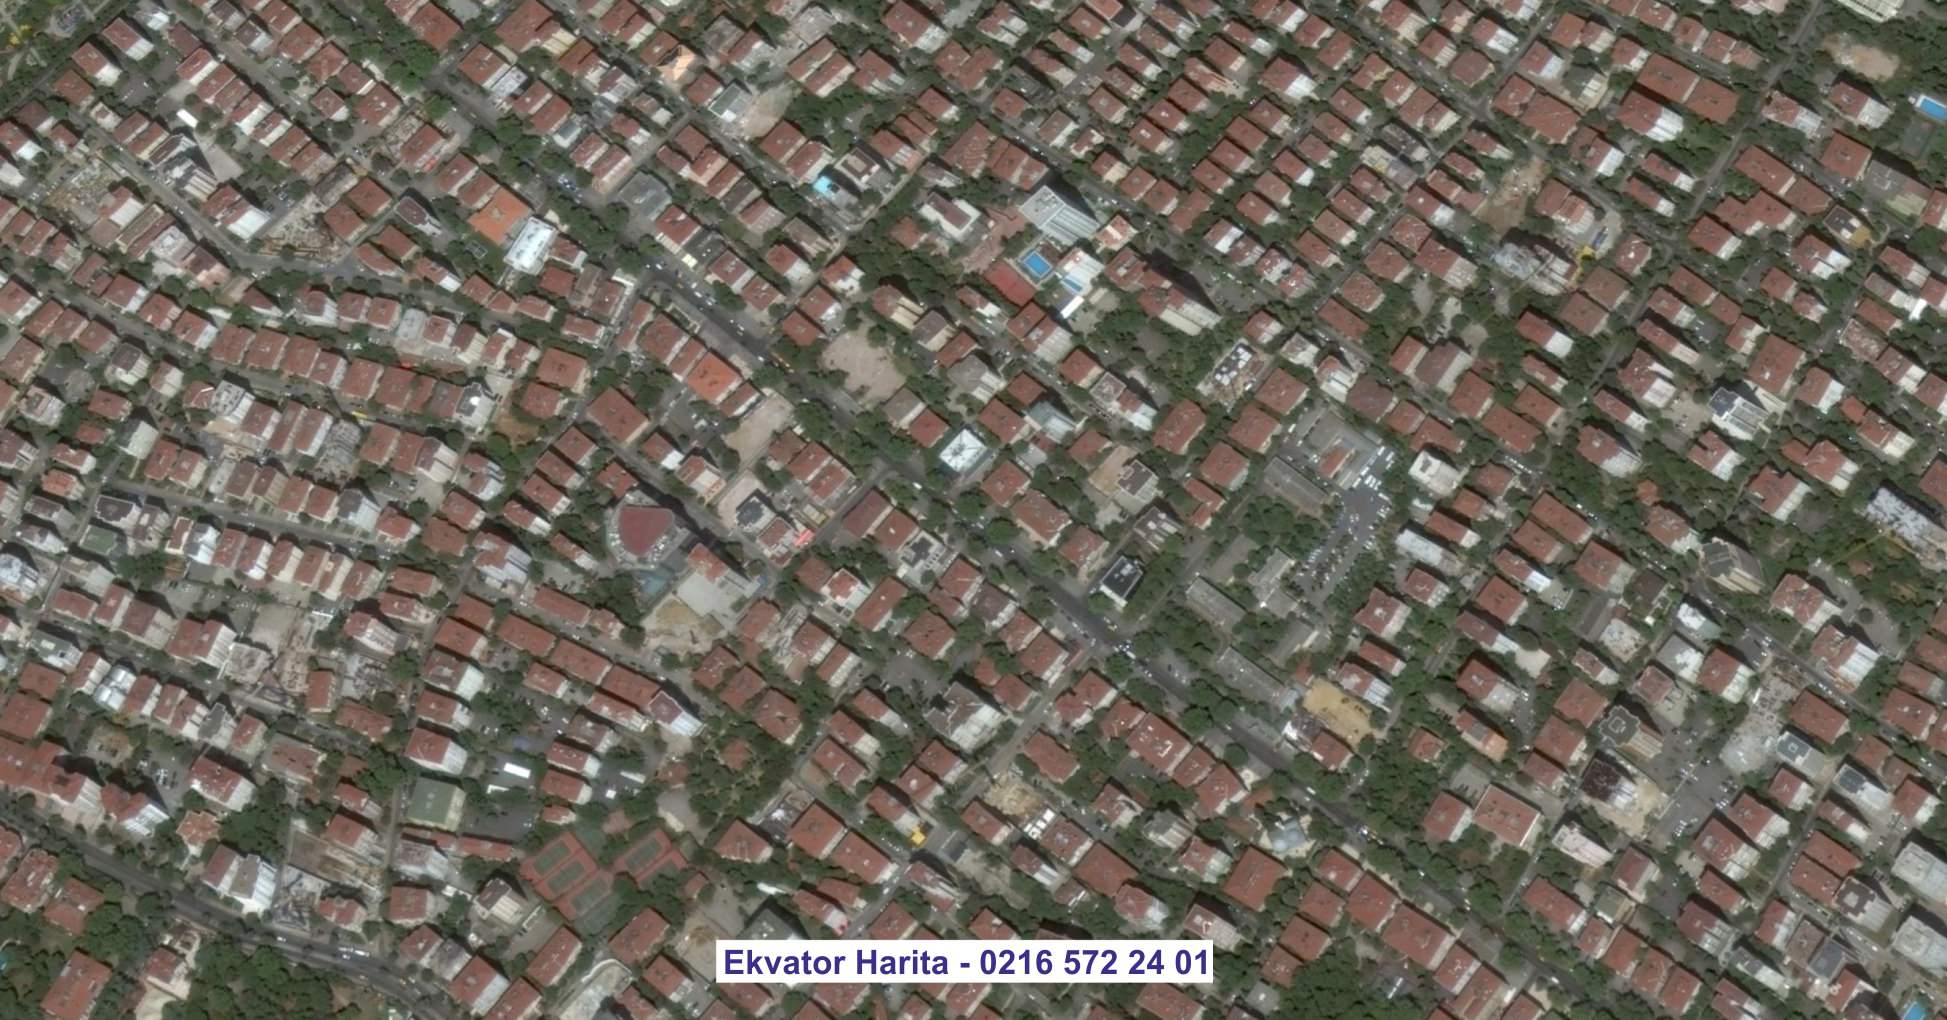 Erzincan Uydu Görüntüsü Örnek Fotoğrafı